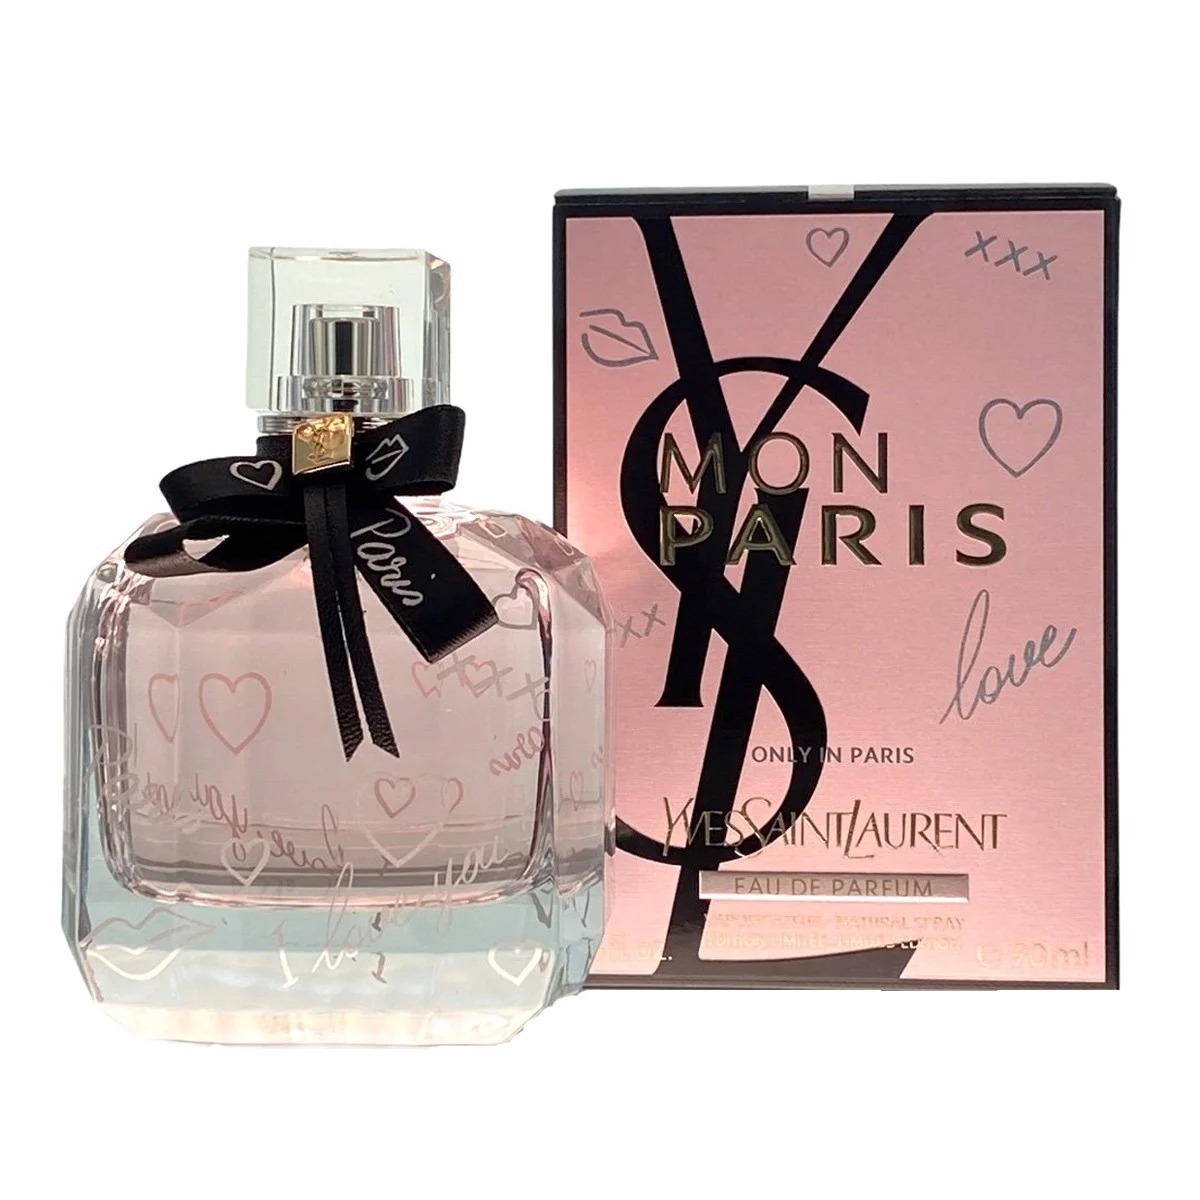 Yves Saint Laurent Mon Paris Love Only In Paris Limited Edition 1